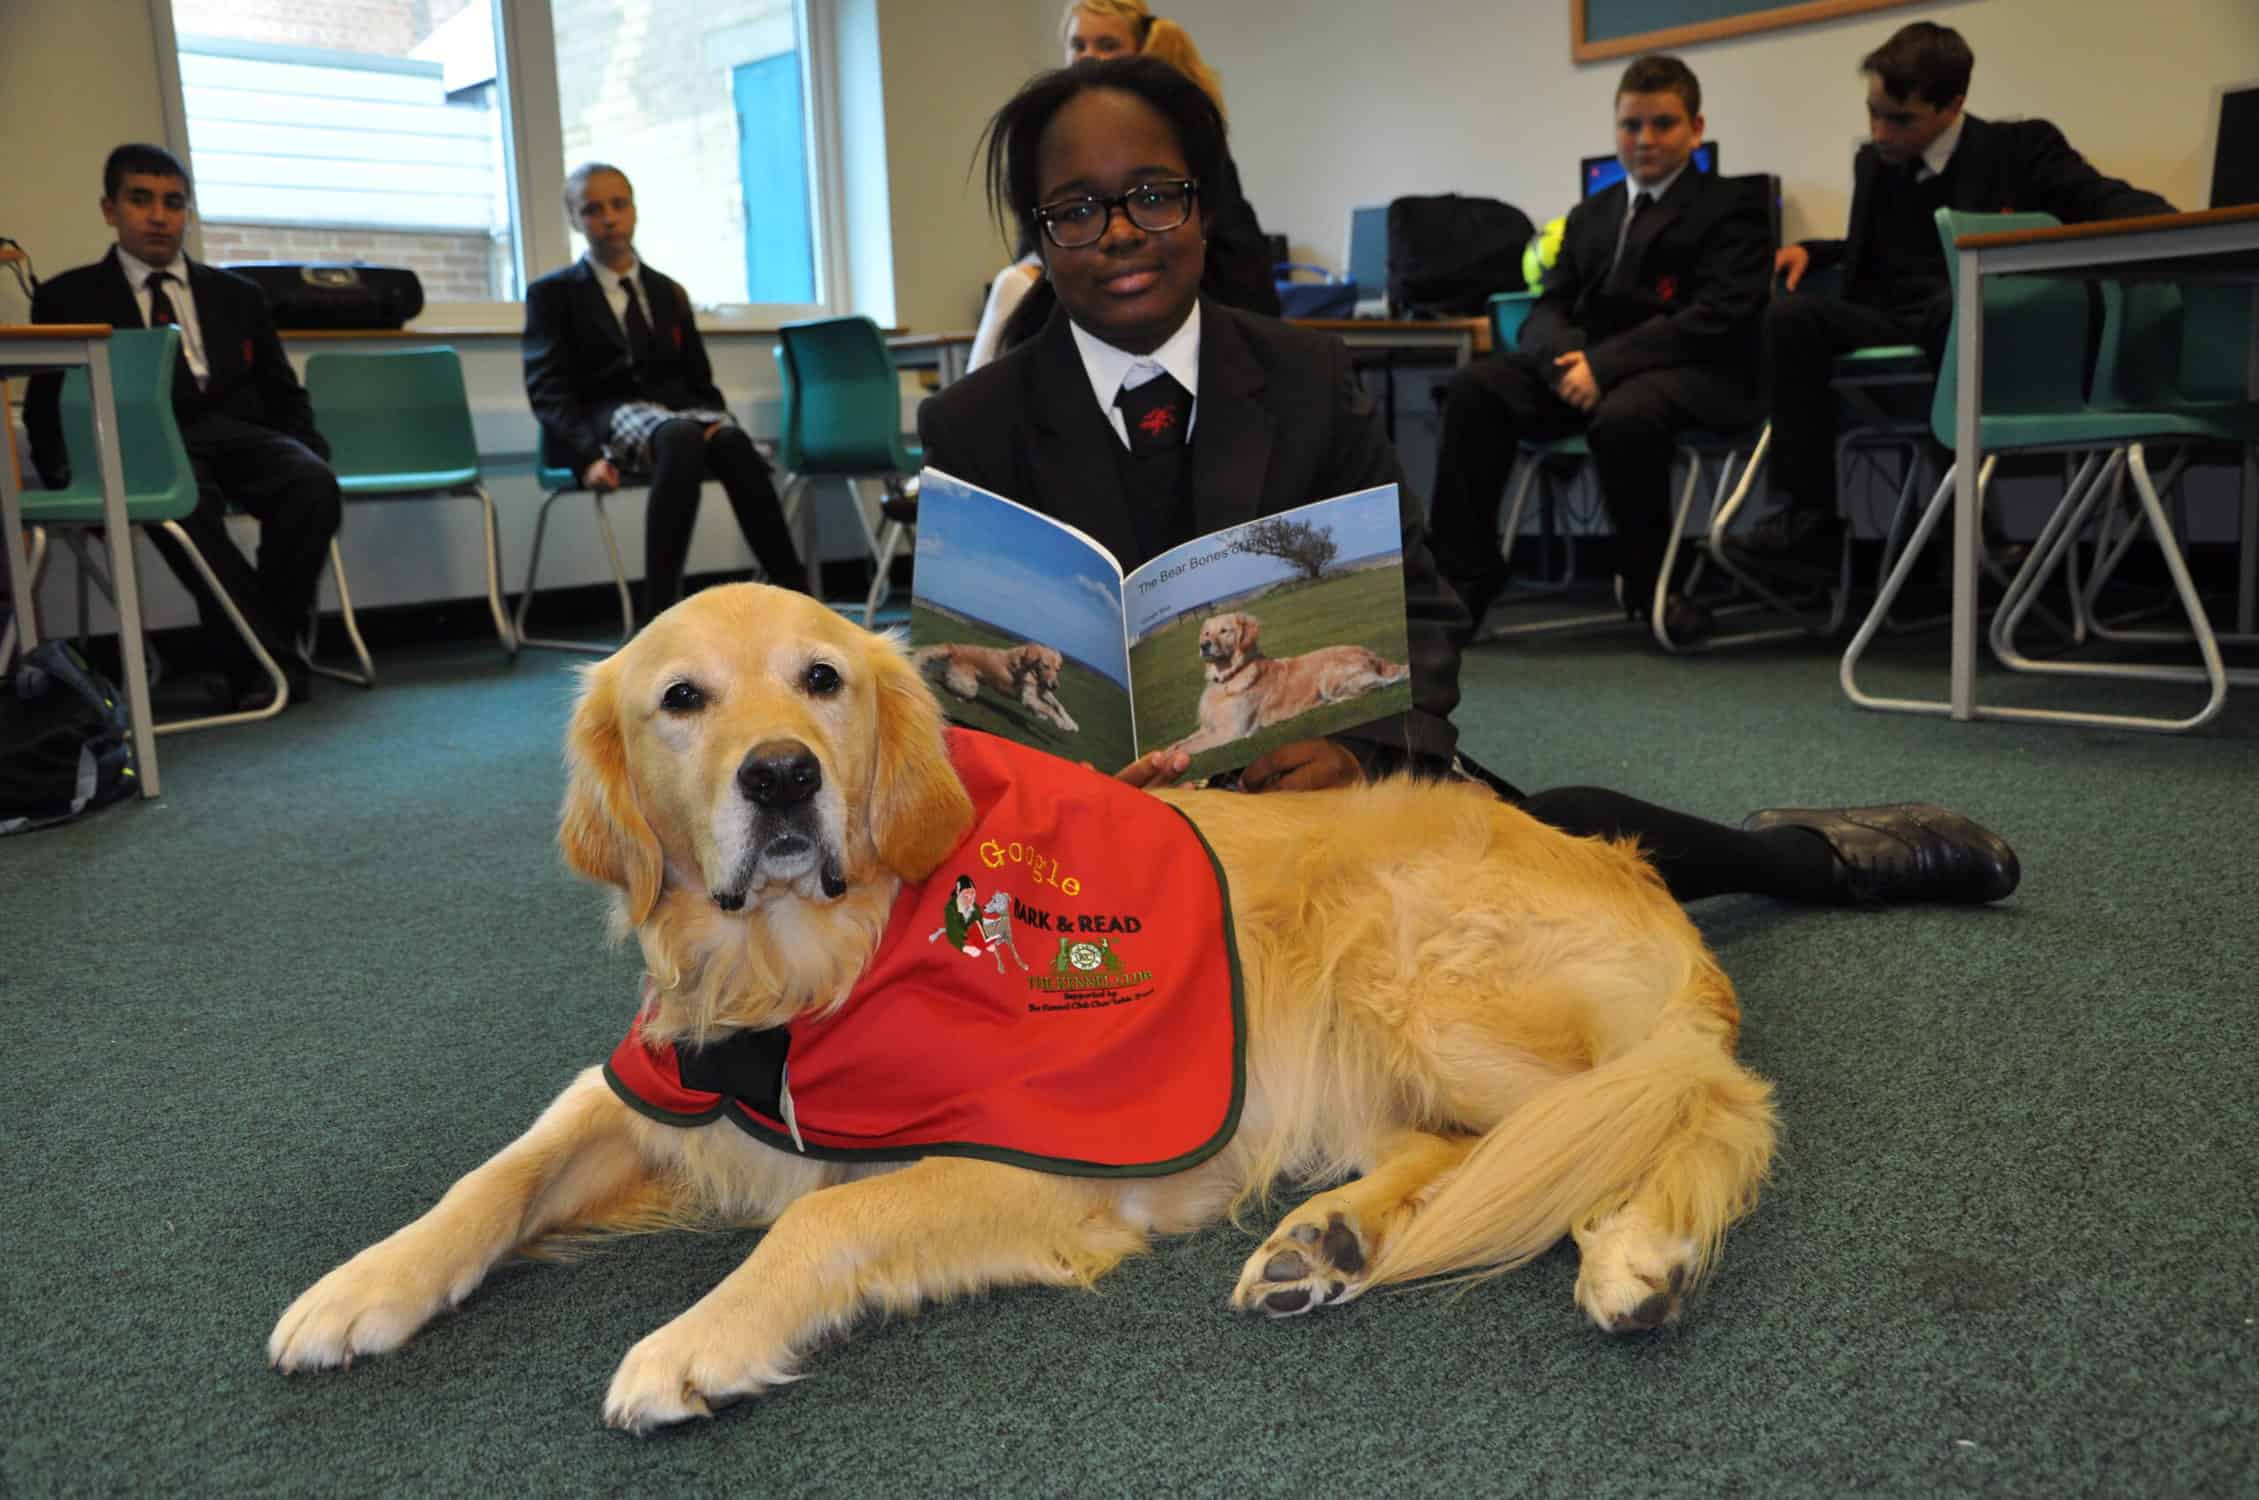 Lorsque les enfants lisent aux chiens, leur capacité de lecture et leur confiance en eux s'en trouvent renforcées. Le Kennel Club explique pourquoi il forme des chiens à la lecture dans les écoles afin d'améliorer l'alphabétisation des enfants.